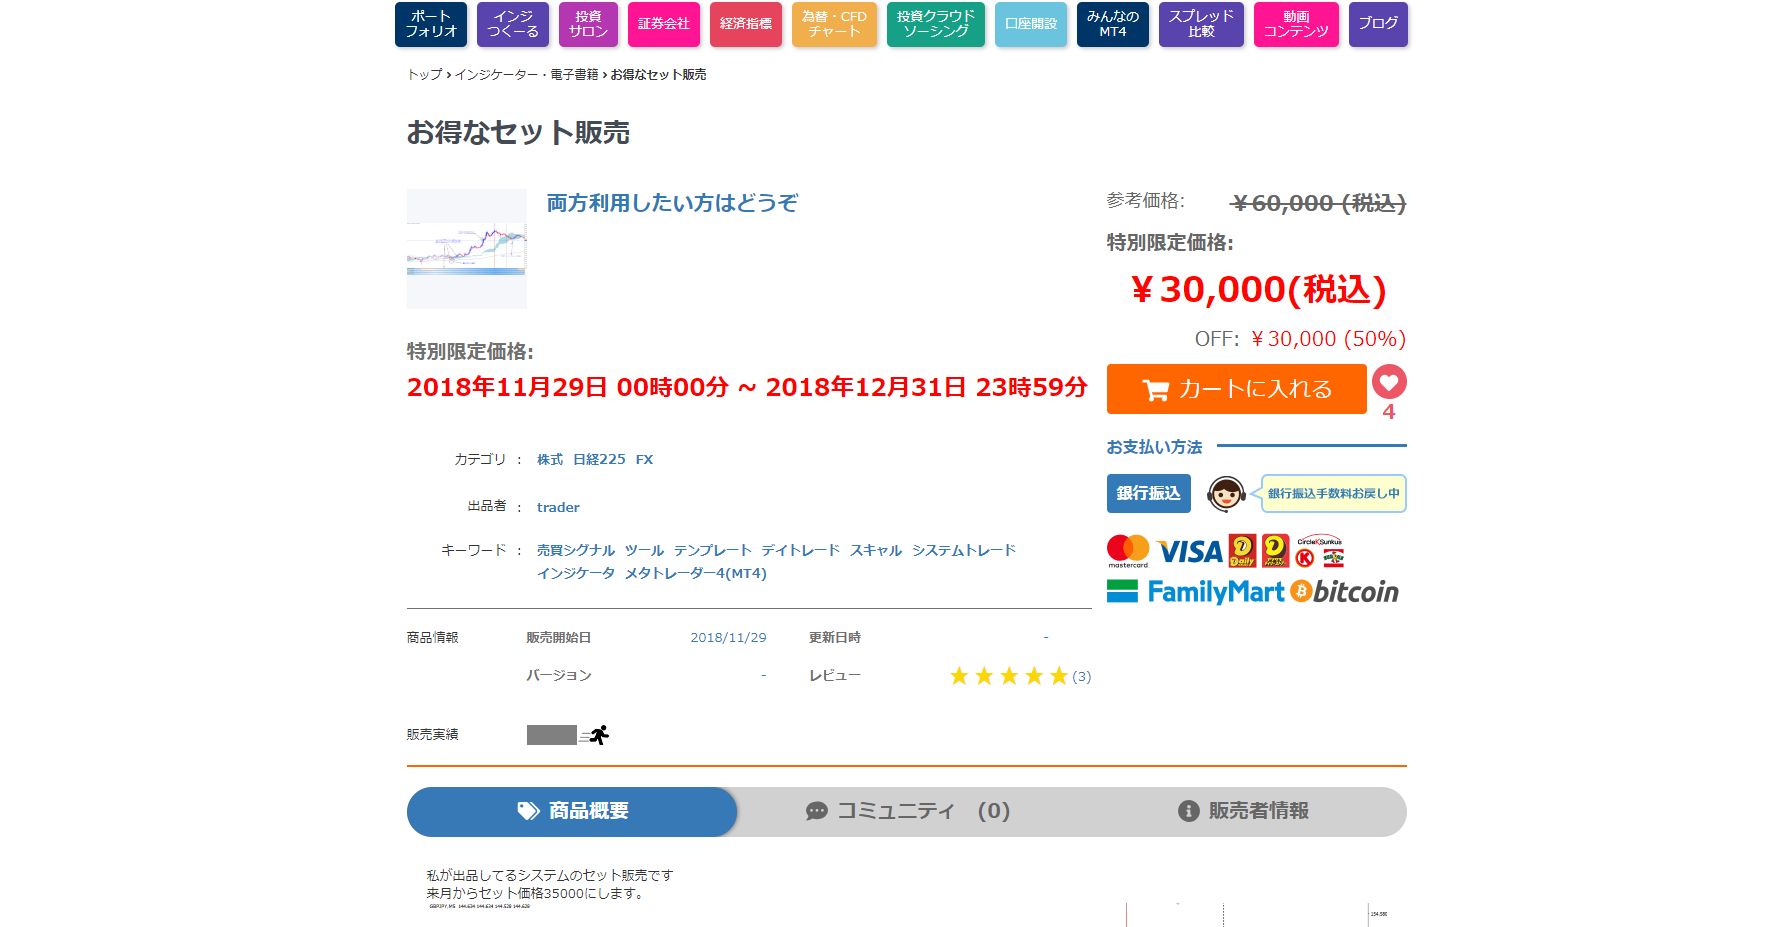 私が出品してるツールを15000円で購入したい方 インジケーター・電子書籍